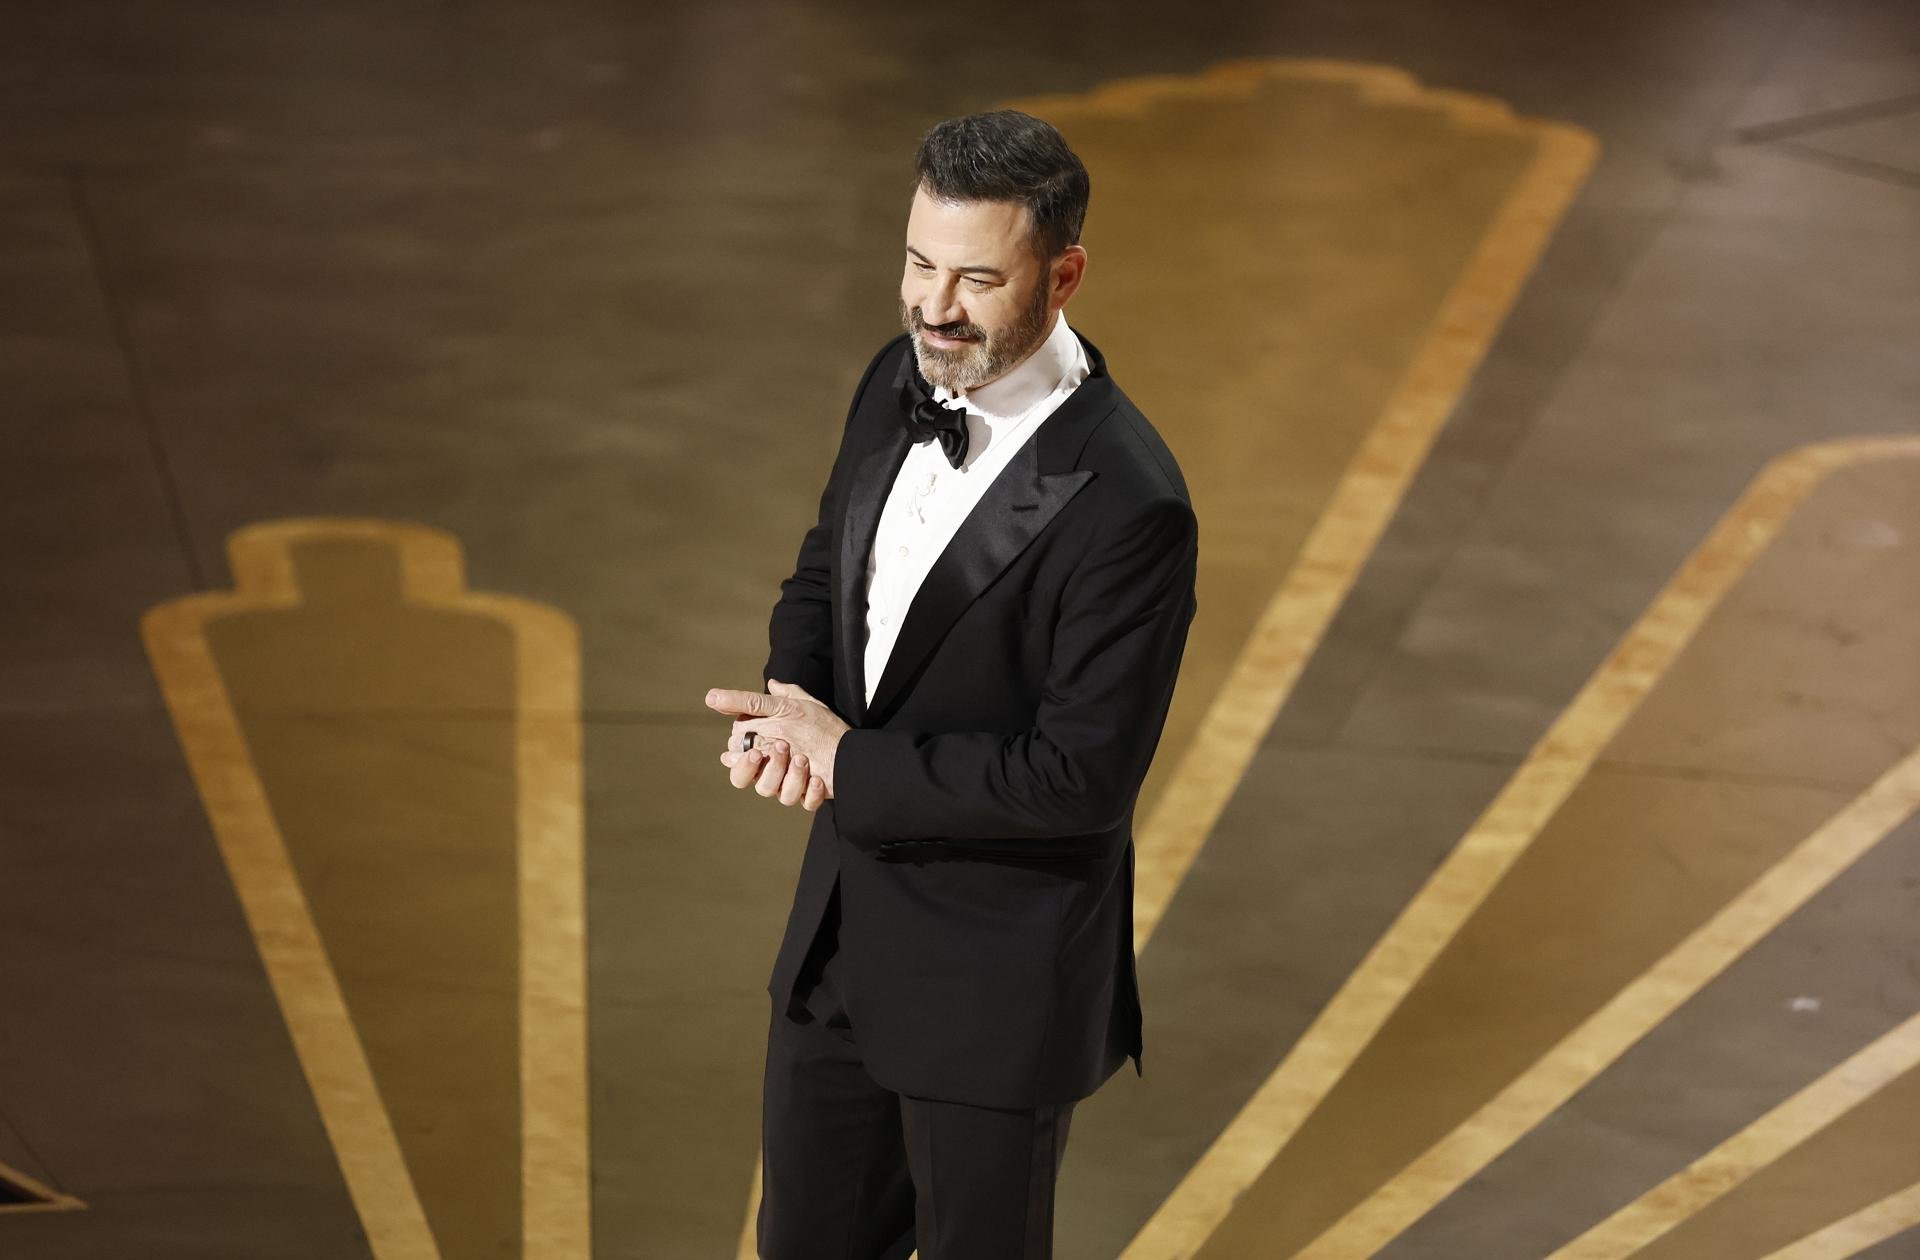 Quién es Jimmy Kimmel, el presentador de los Oscars 2023 que vuelve a los premios después de 5 años